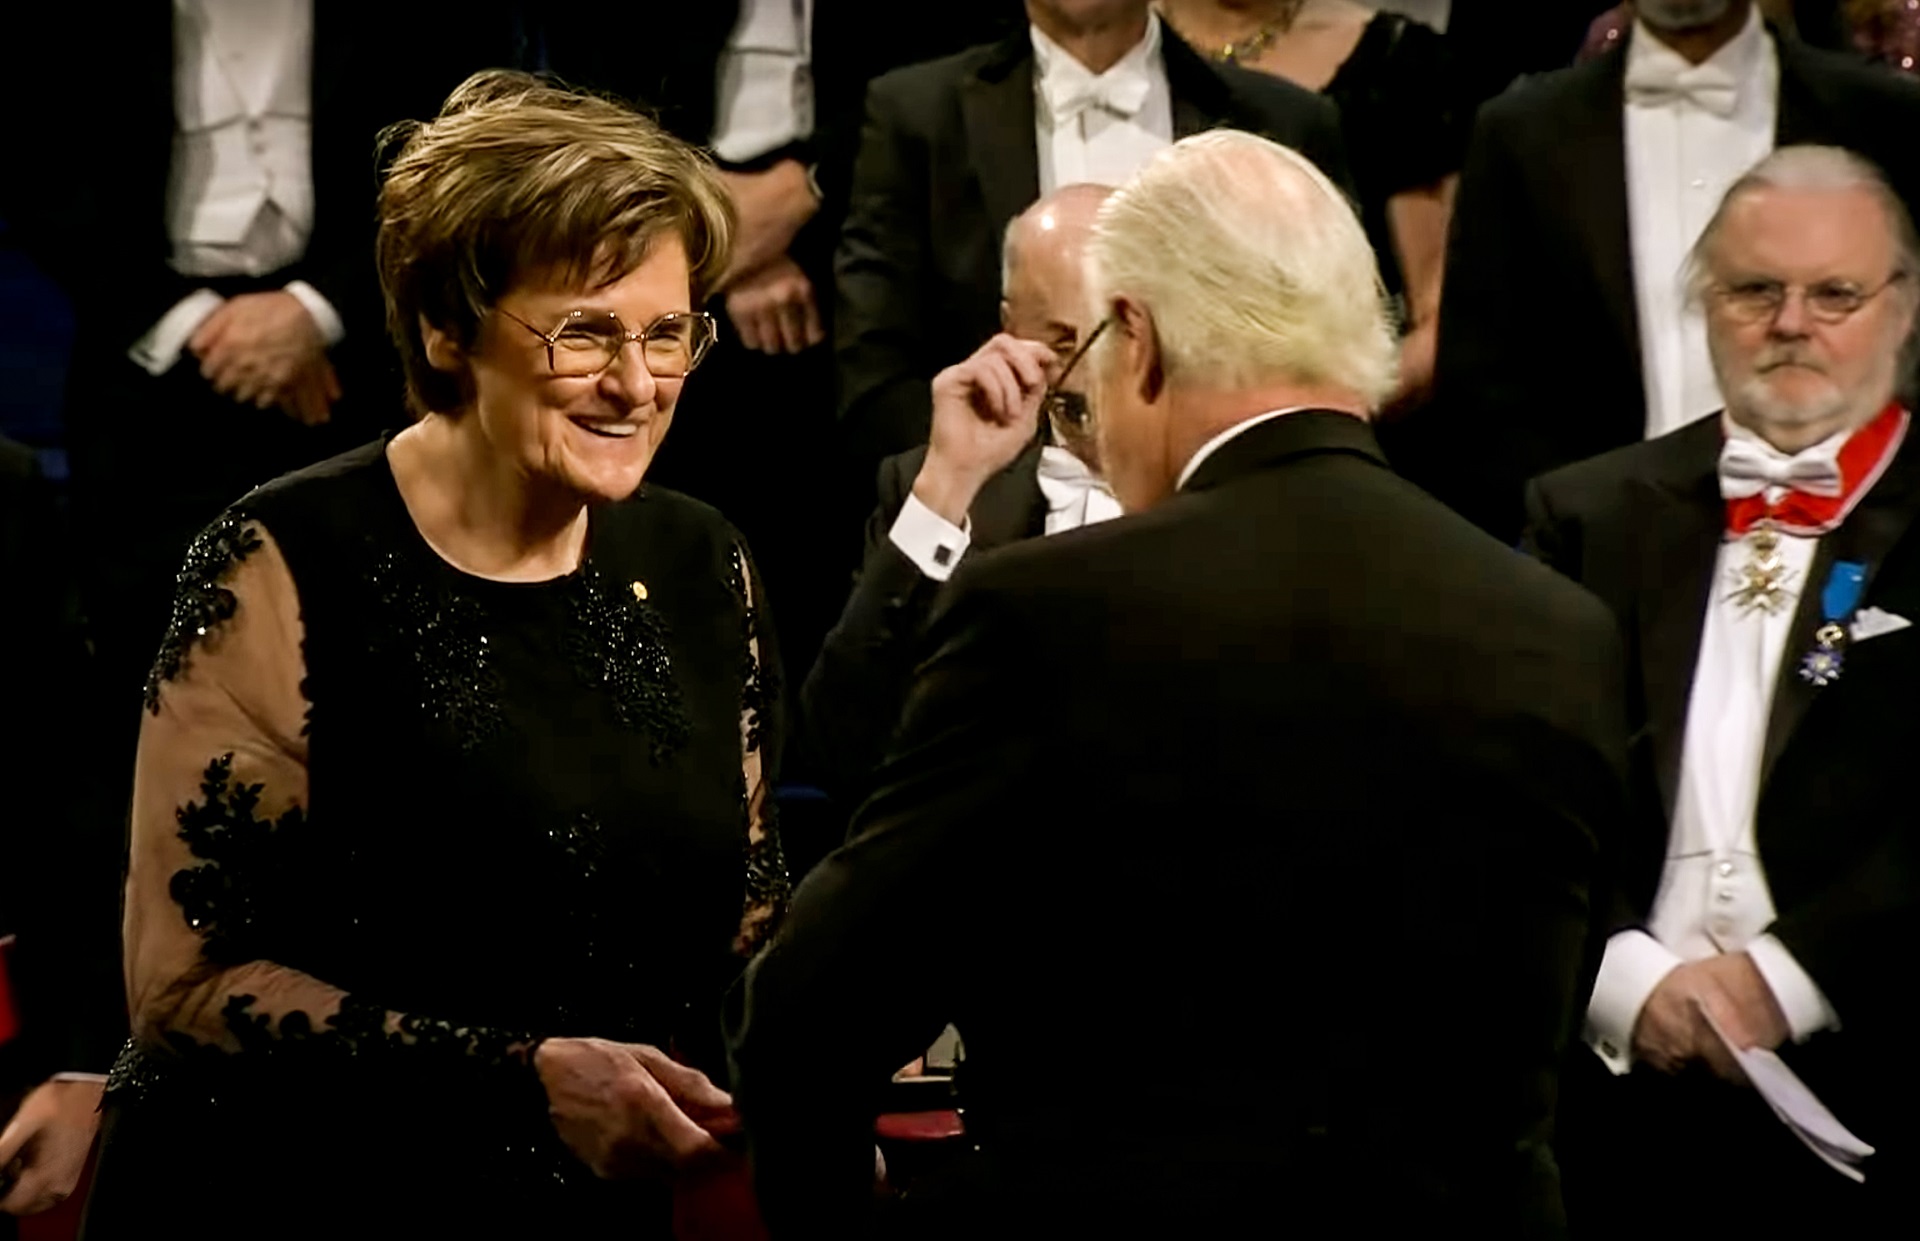 Karikó Katalin biokémikus átveszi az orvosi-élettani Nobel-díjat XVI. Károly Gusztáv svéd királytól a 2023-as Nobel-díjak átadási ünnepségén a stockholmi hangversenyteremben 2023. december 10-én.